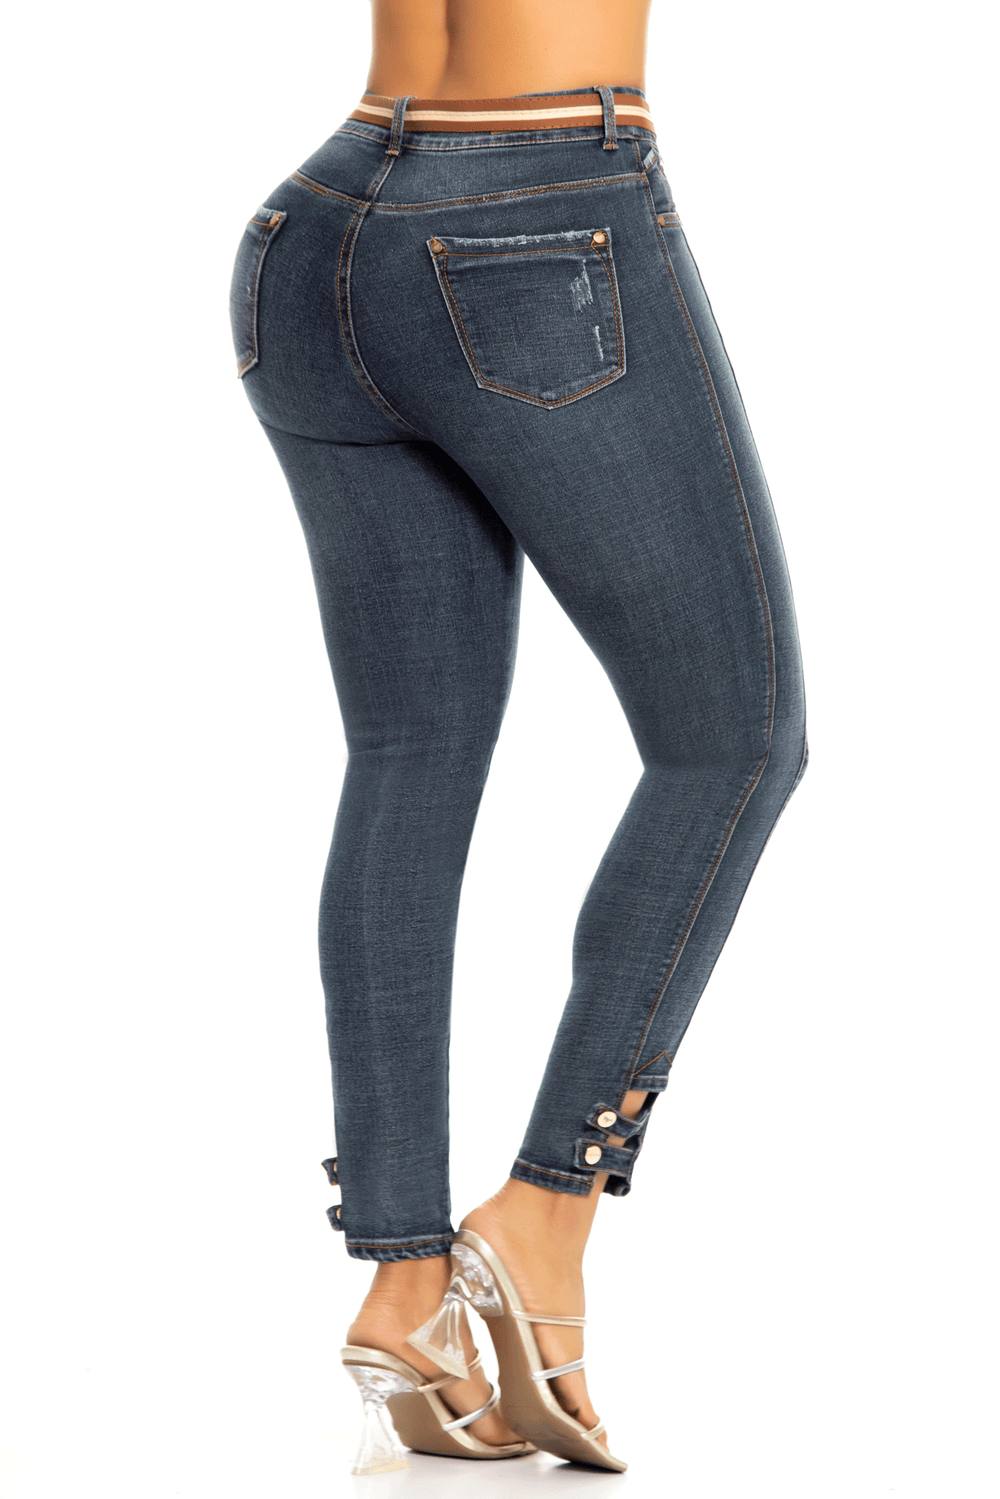 Jeans Push Up Carlos Prada 6223  Colombian Wear – Colombiana de jeans